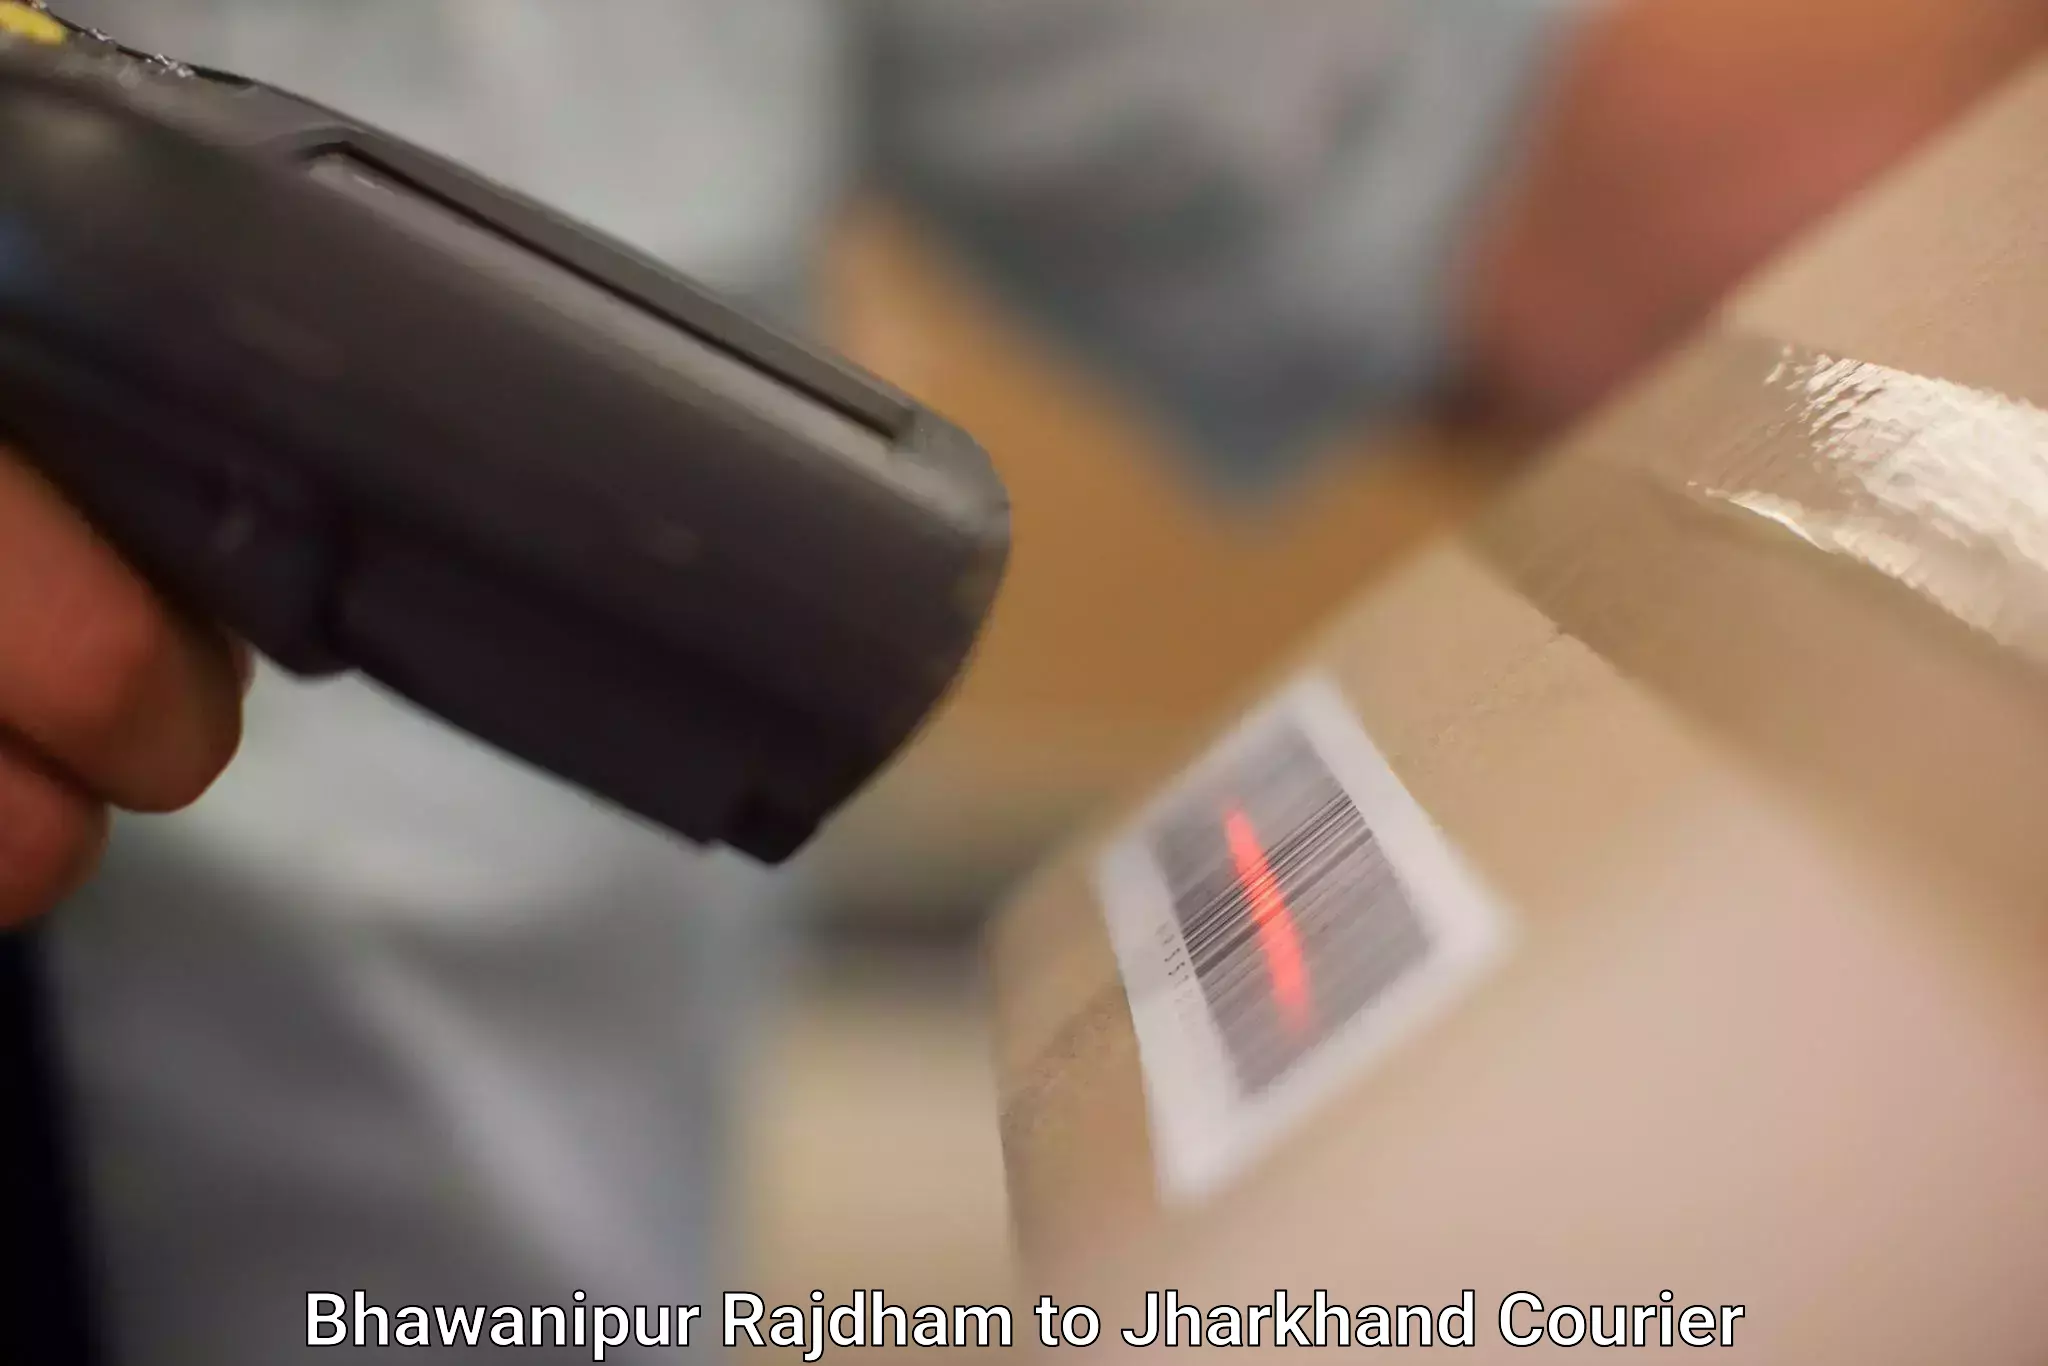 High-capacity parcel service Bhawanipur Rajdham to Simdega